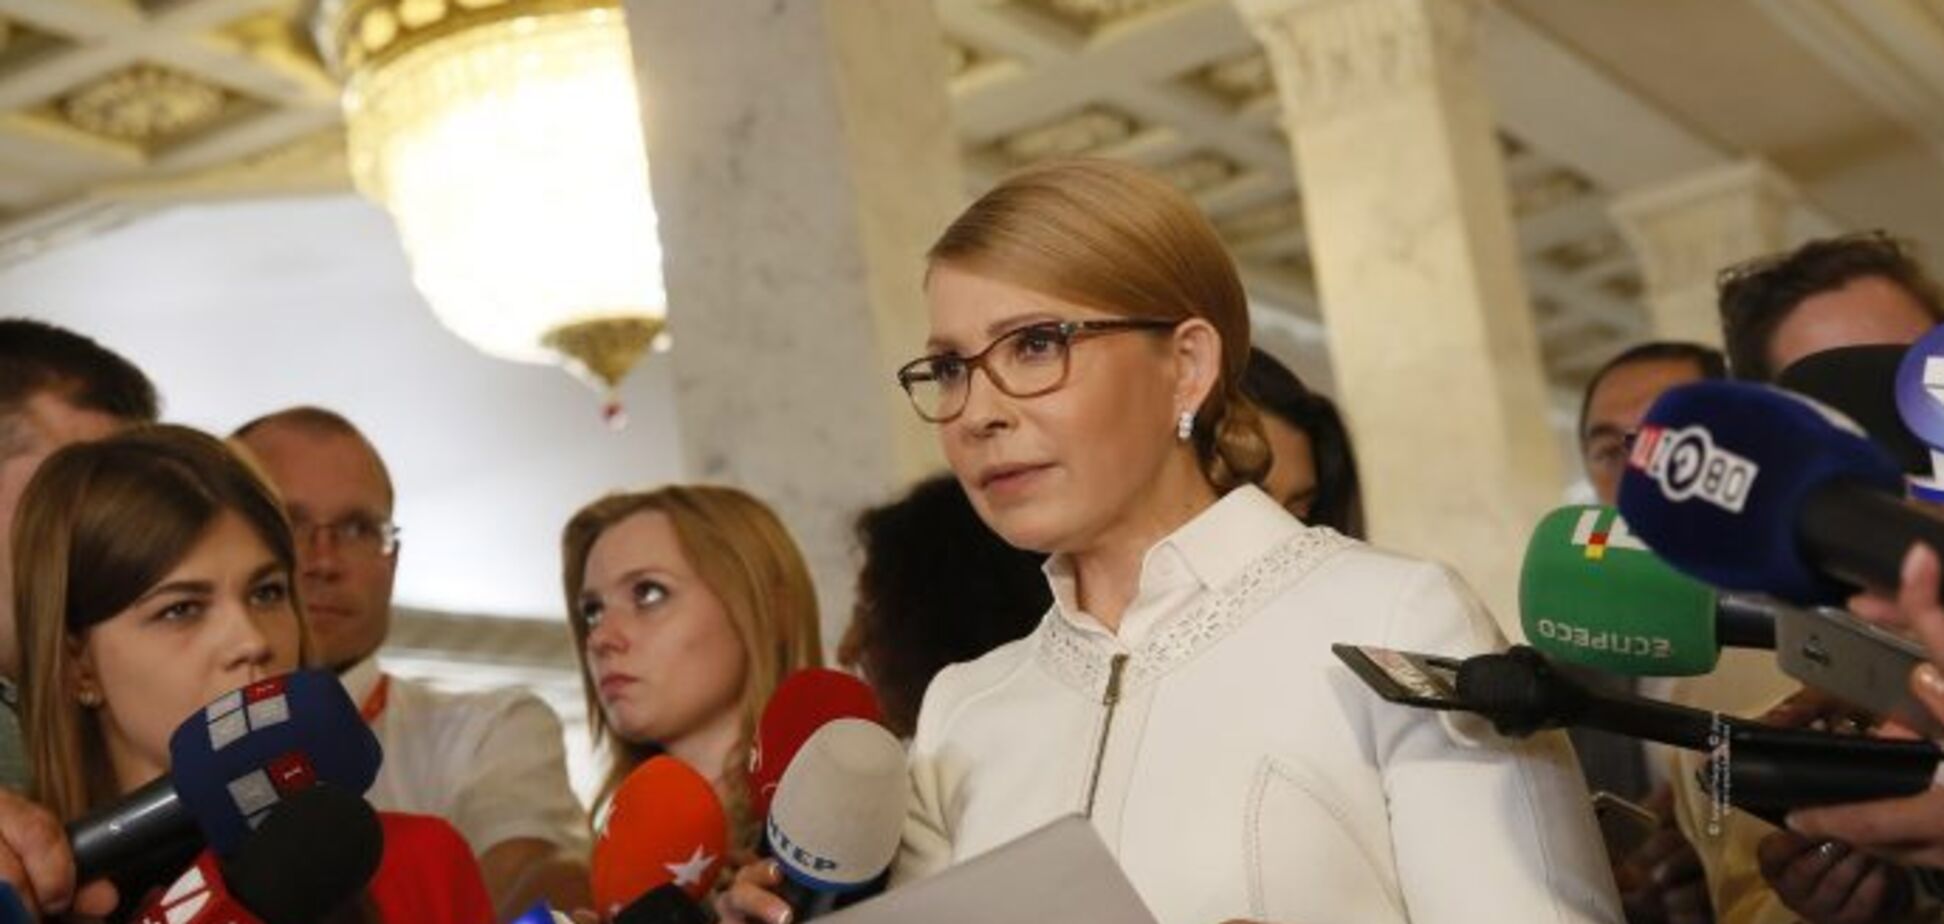 Виконати рішення суду та знизити тарифи зможе лише 'Батьківщина' – Тимошенко